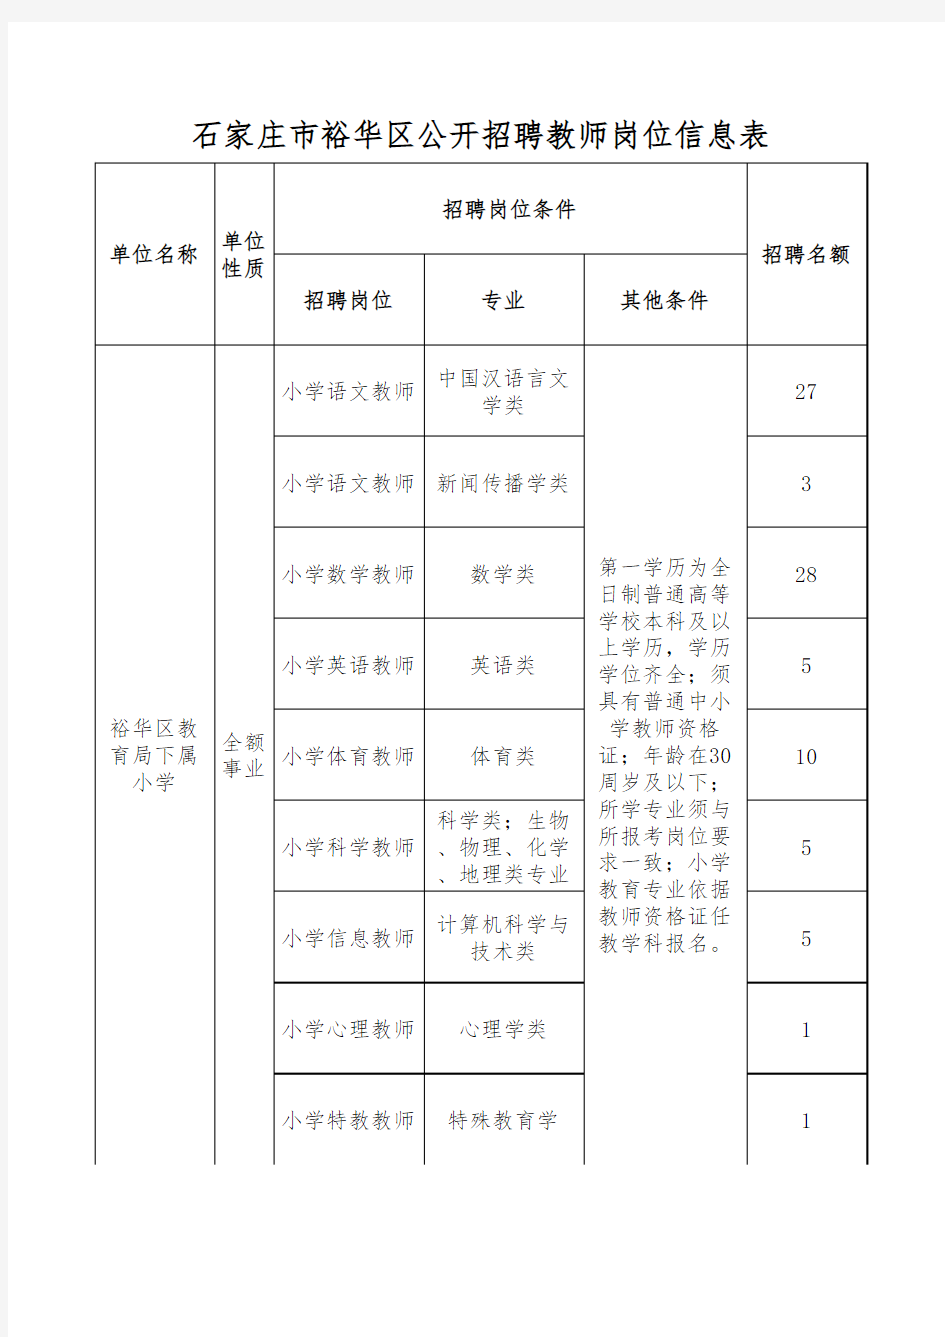 2018年石家庄市裕华区公开招聘教师岗位信息表